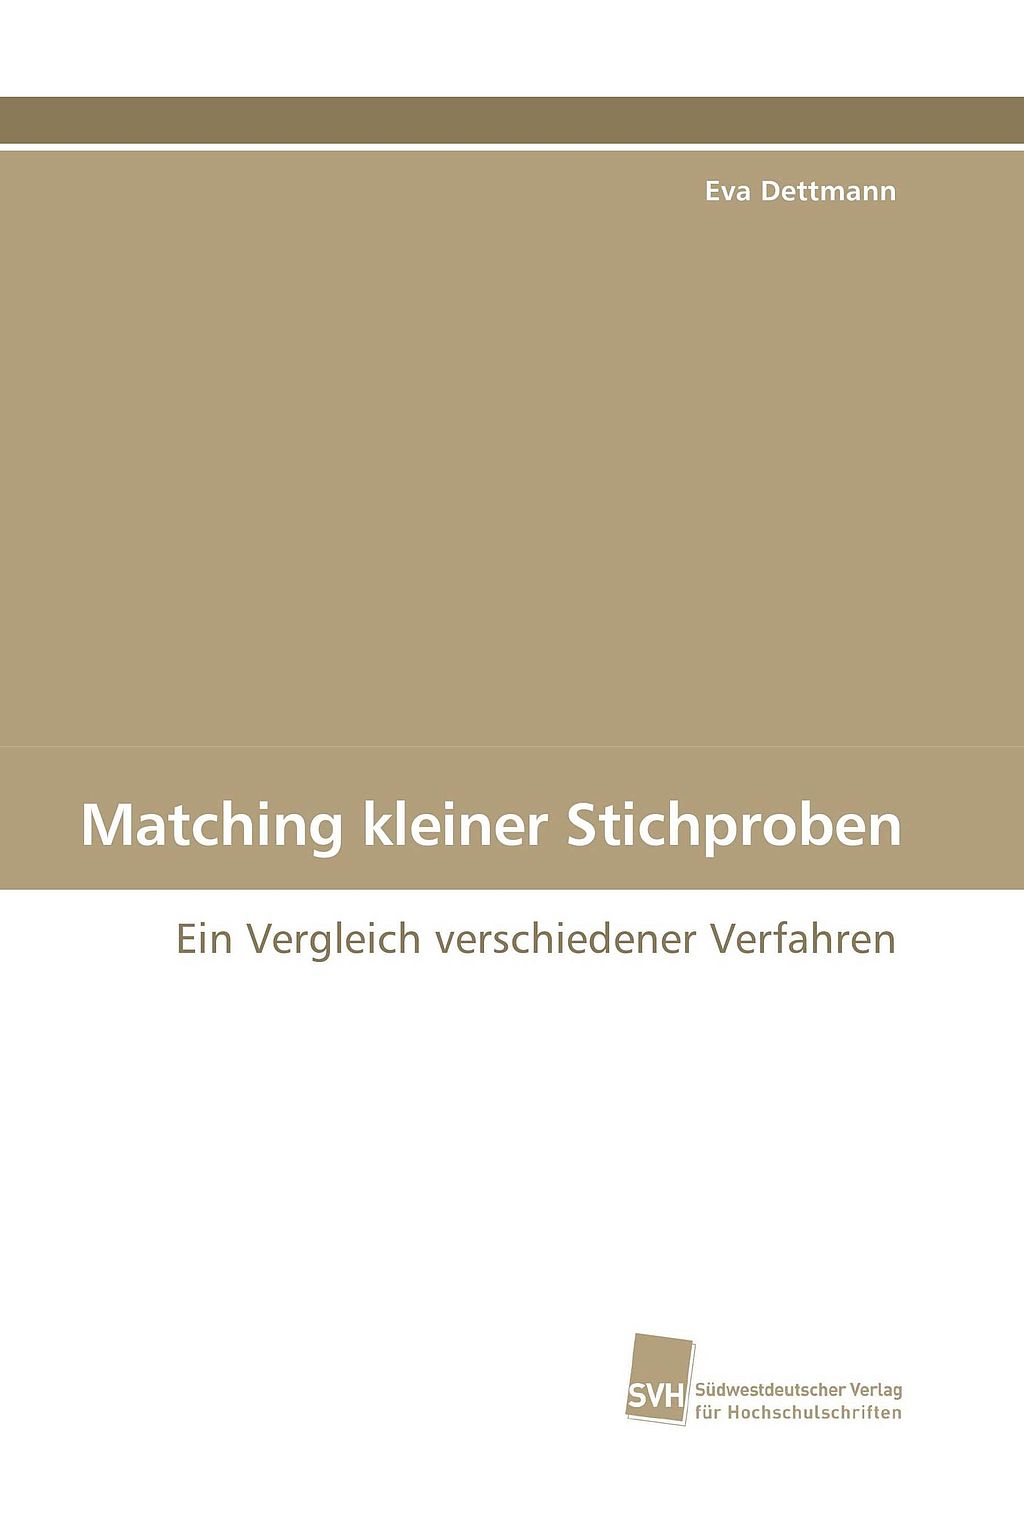 cover_matching-kleiner-stichproben.jpg